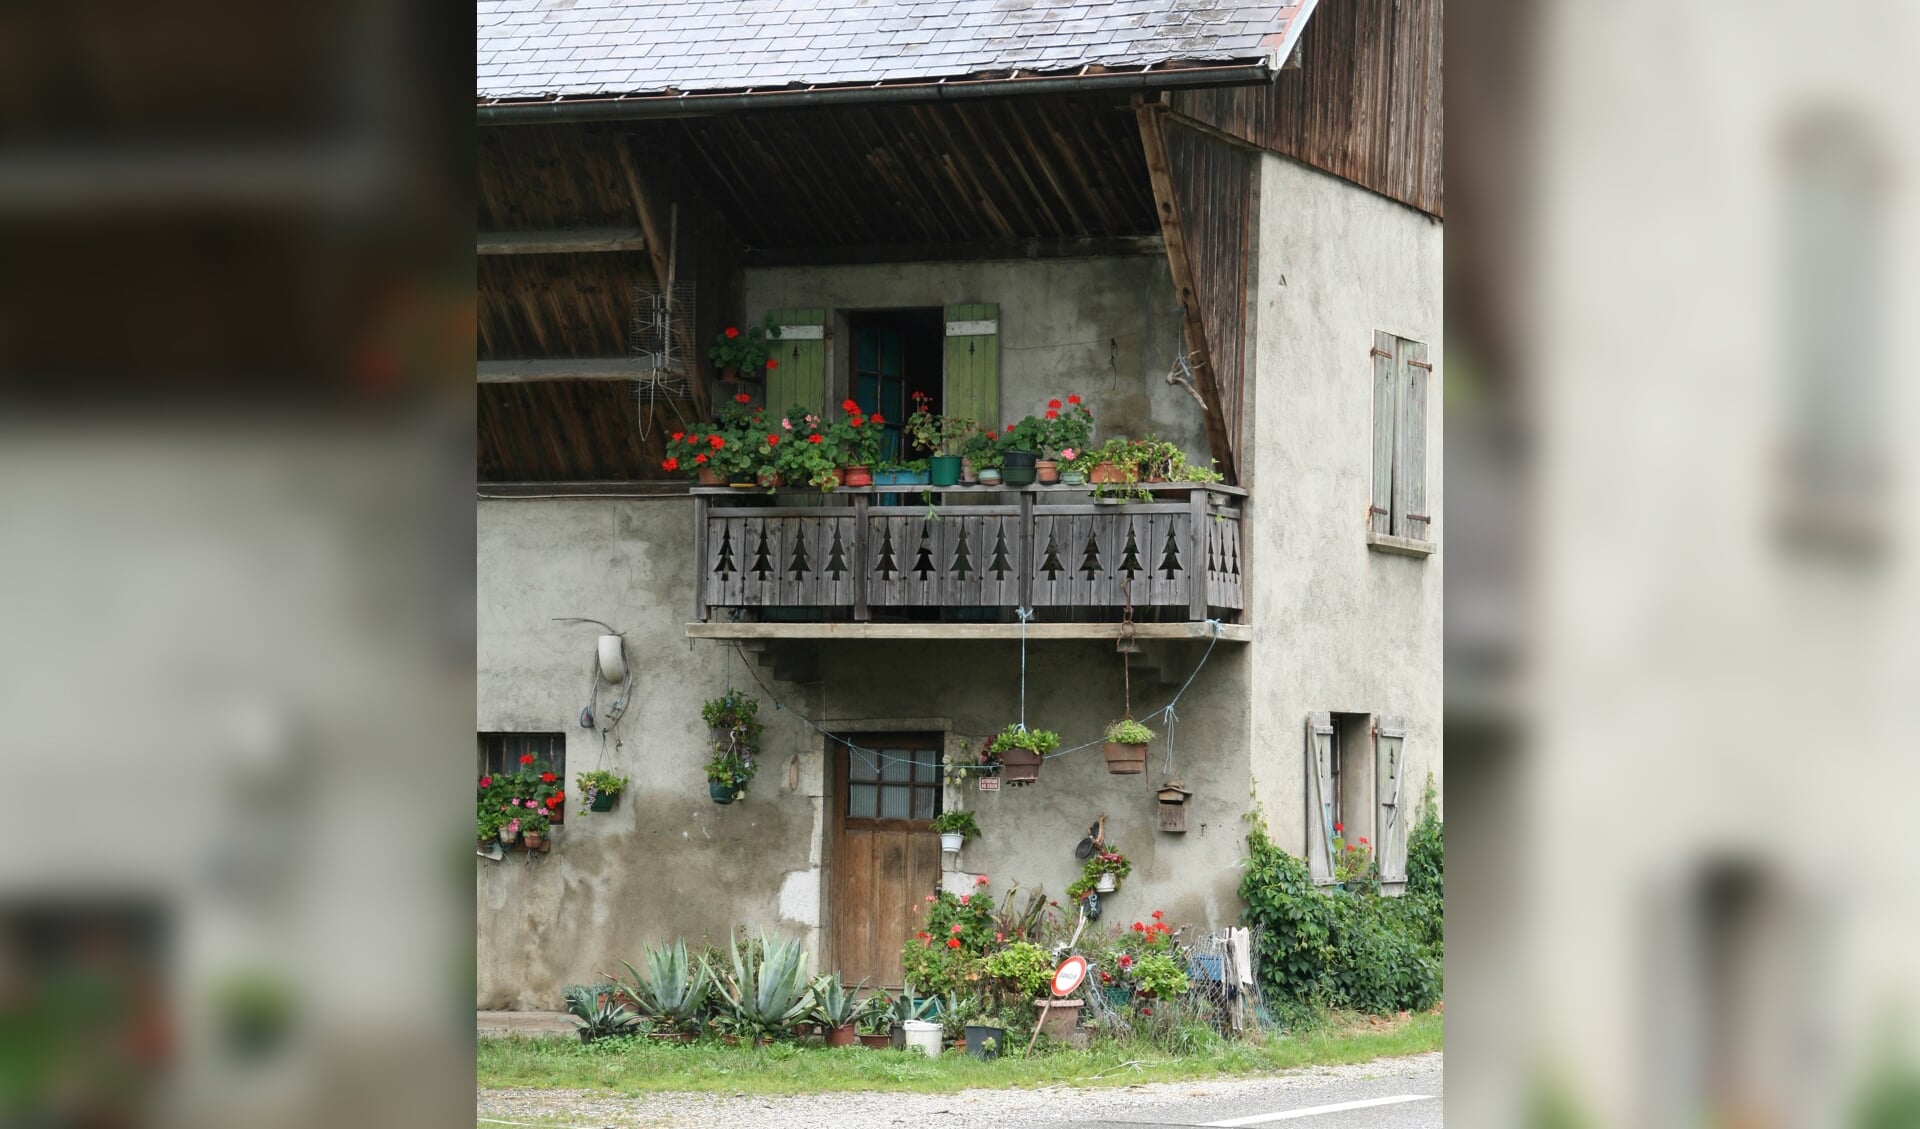 Vrijwel elk dorpje in Frankrijk leent zich voor schilderachtige foto's.  